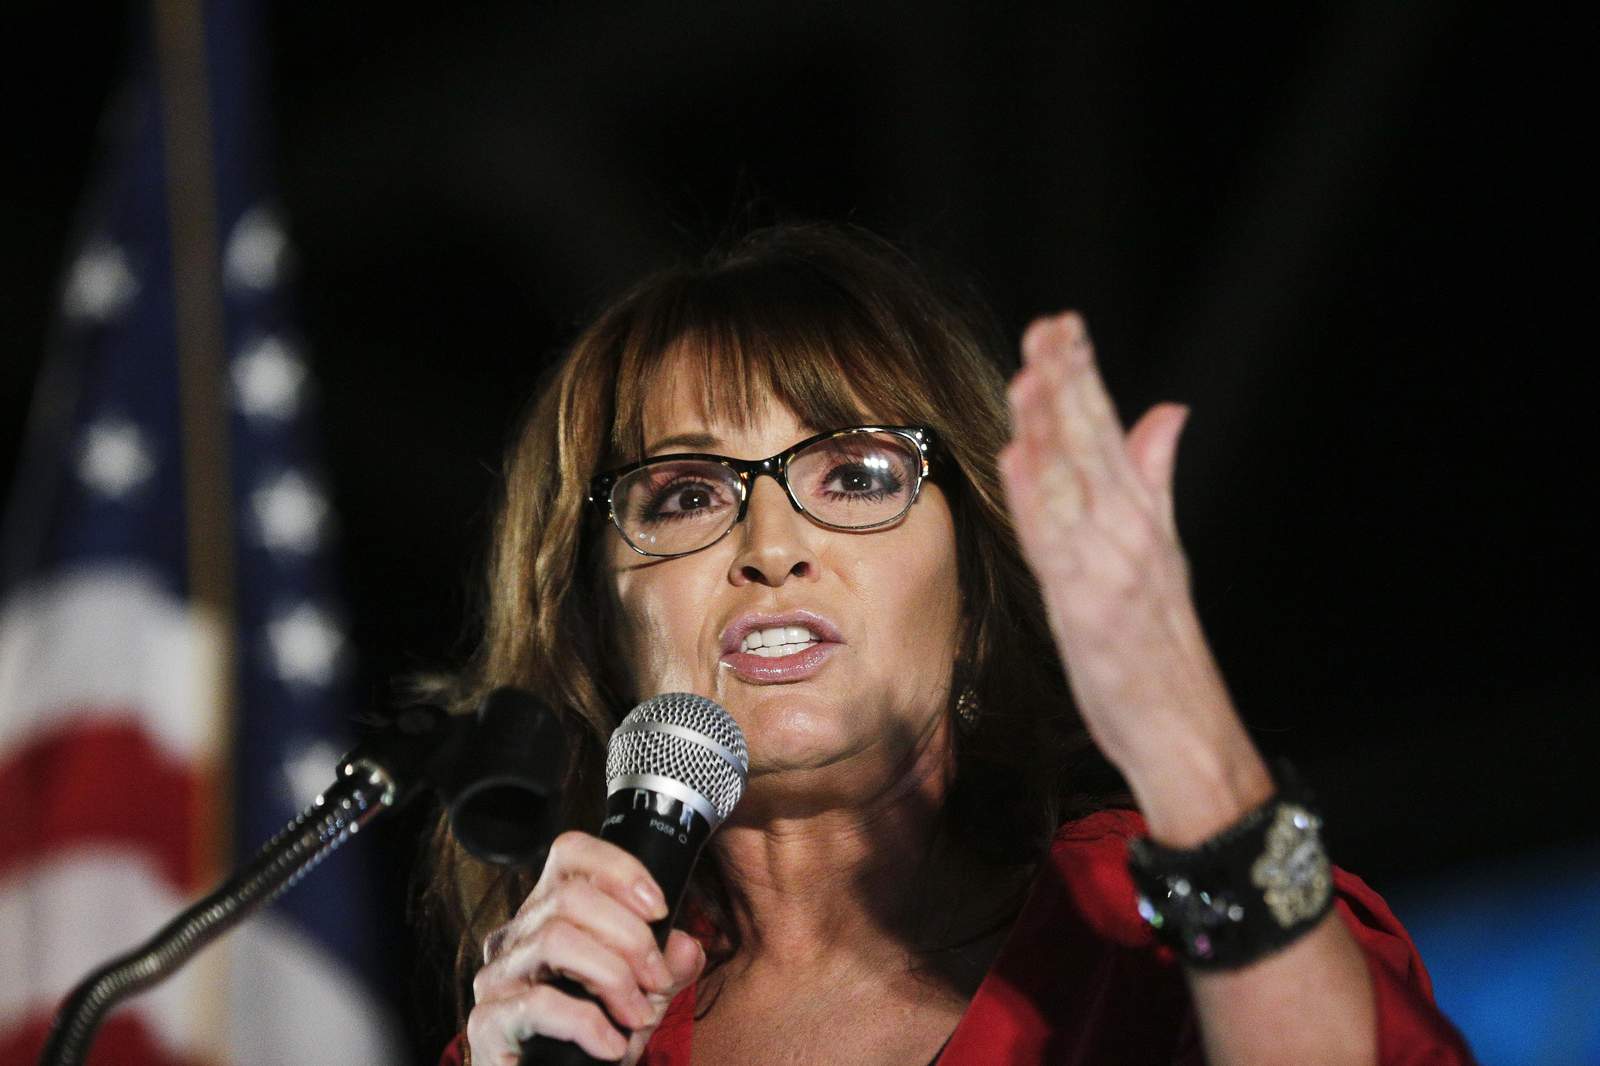 Palin confirms COVID-19 diagnosis, urges steps like masks